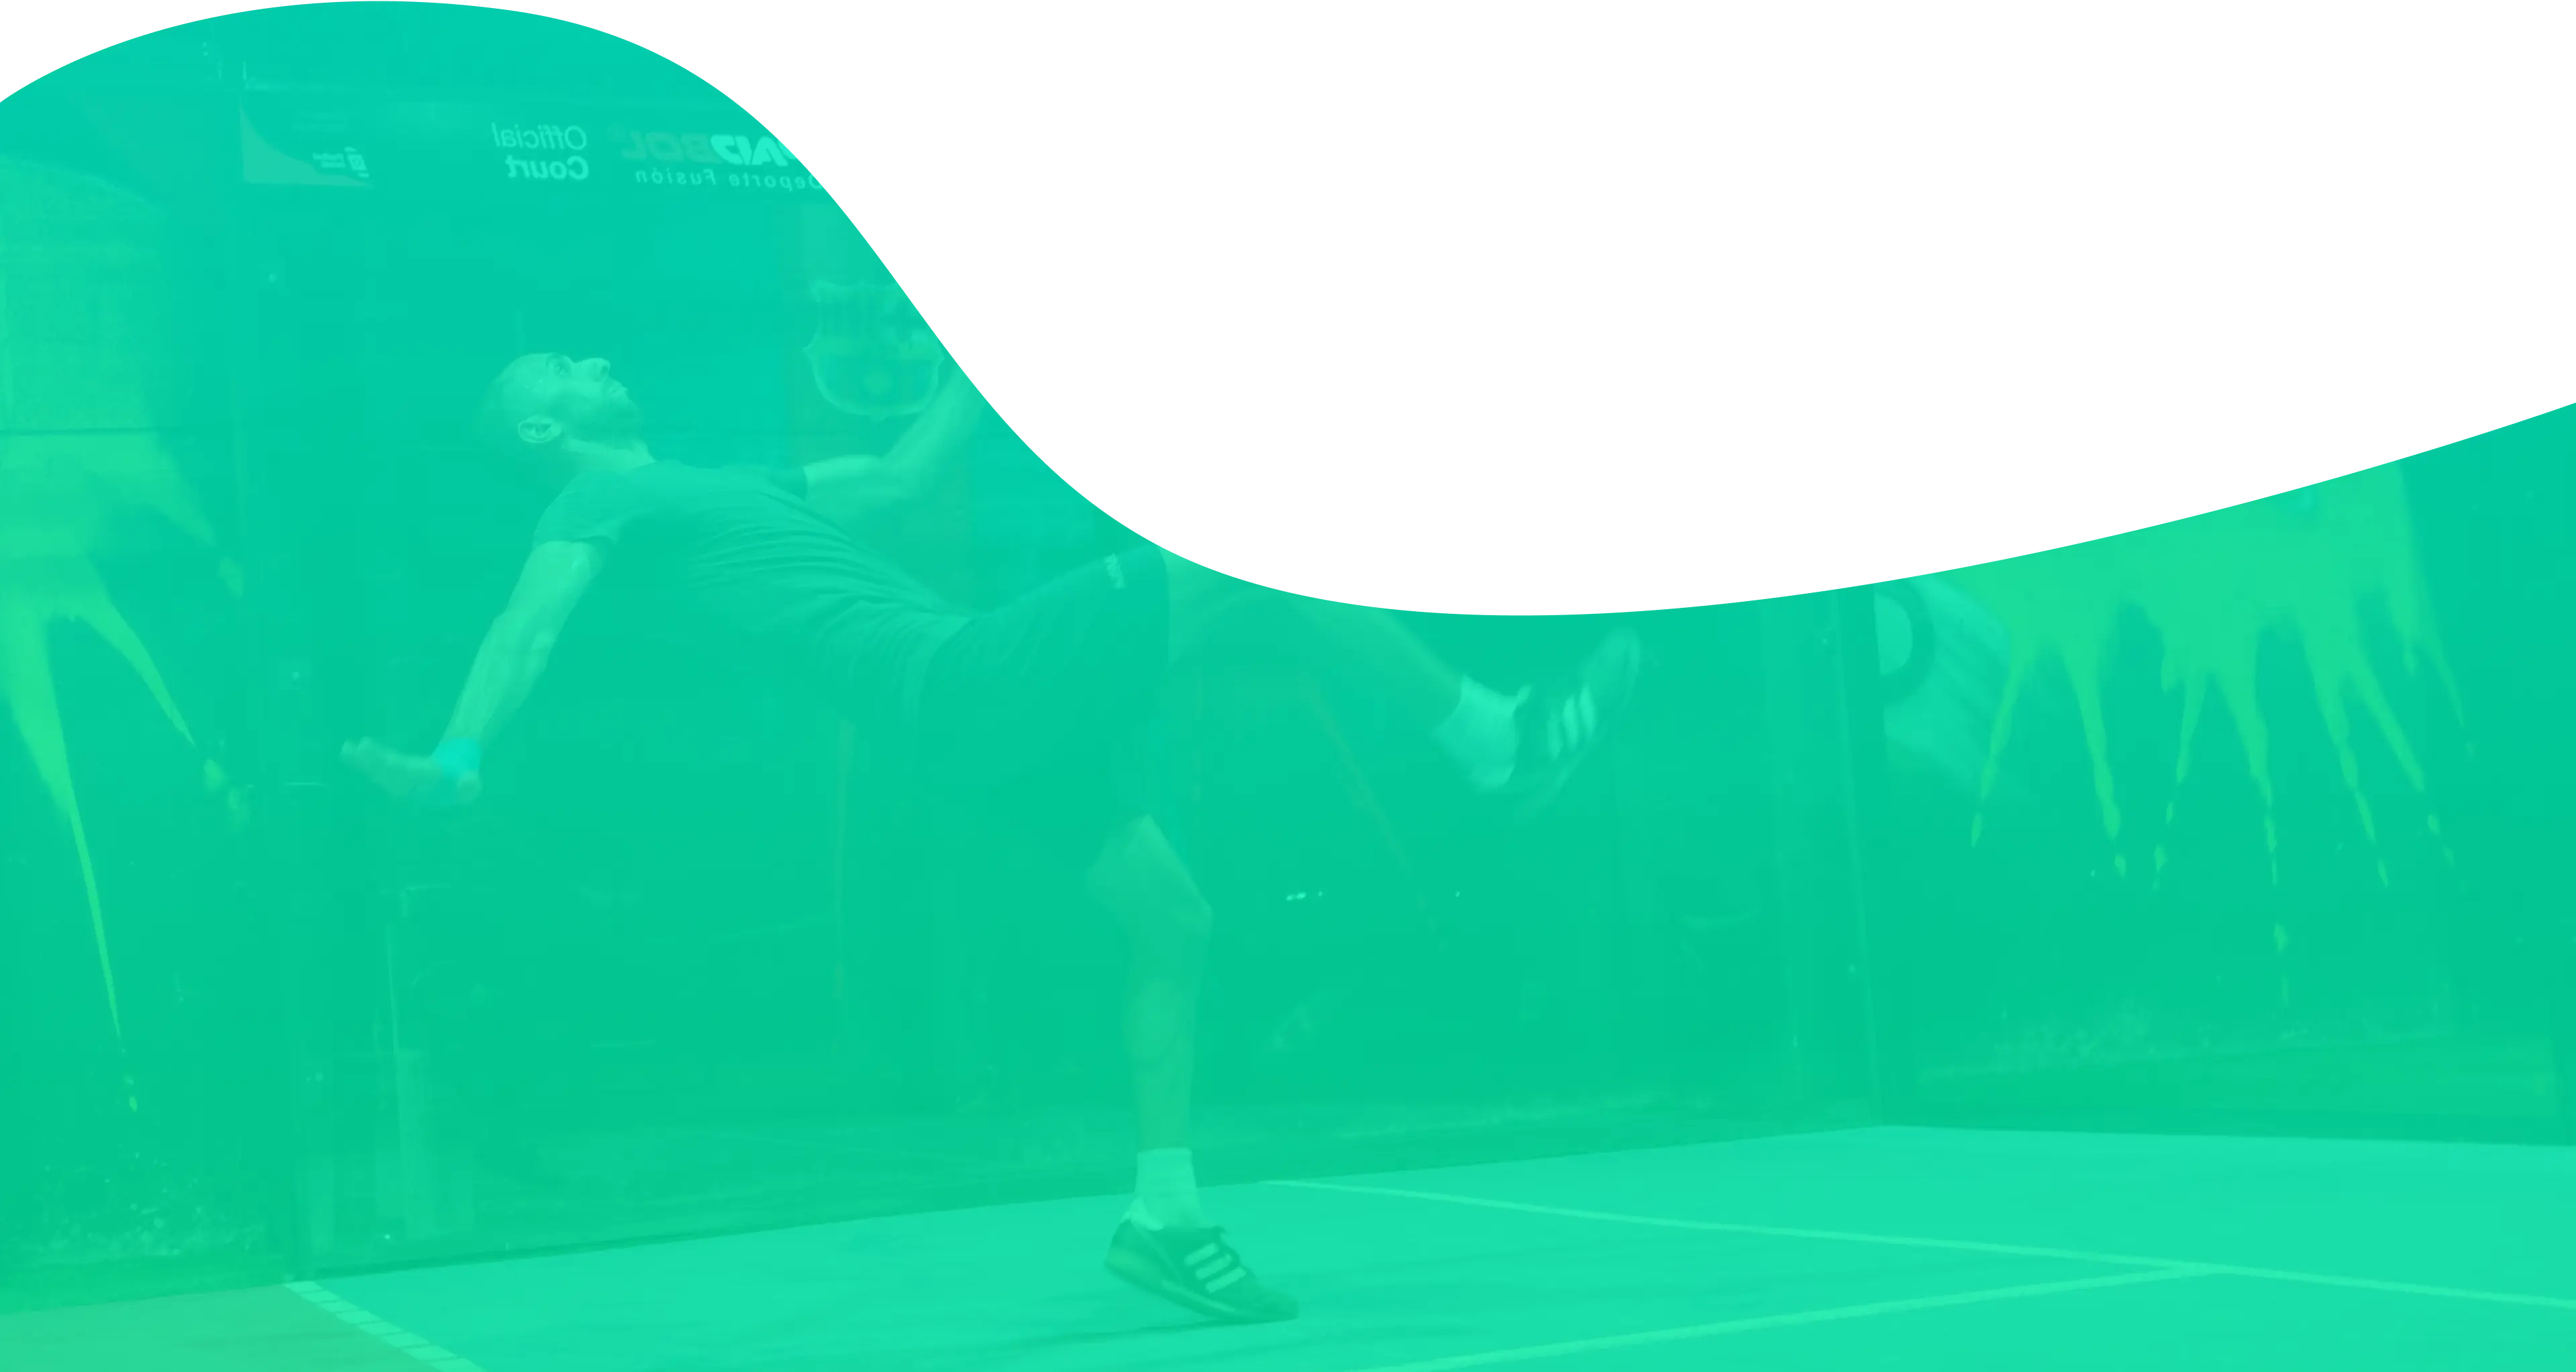 רקע ירוק בהיר שמציג תמונה דהויה של שחקן פט בול